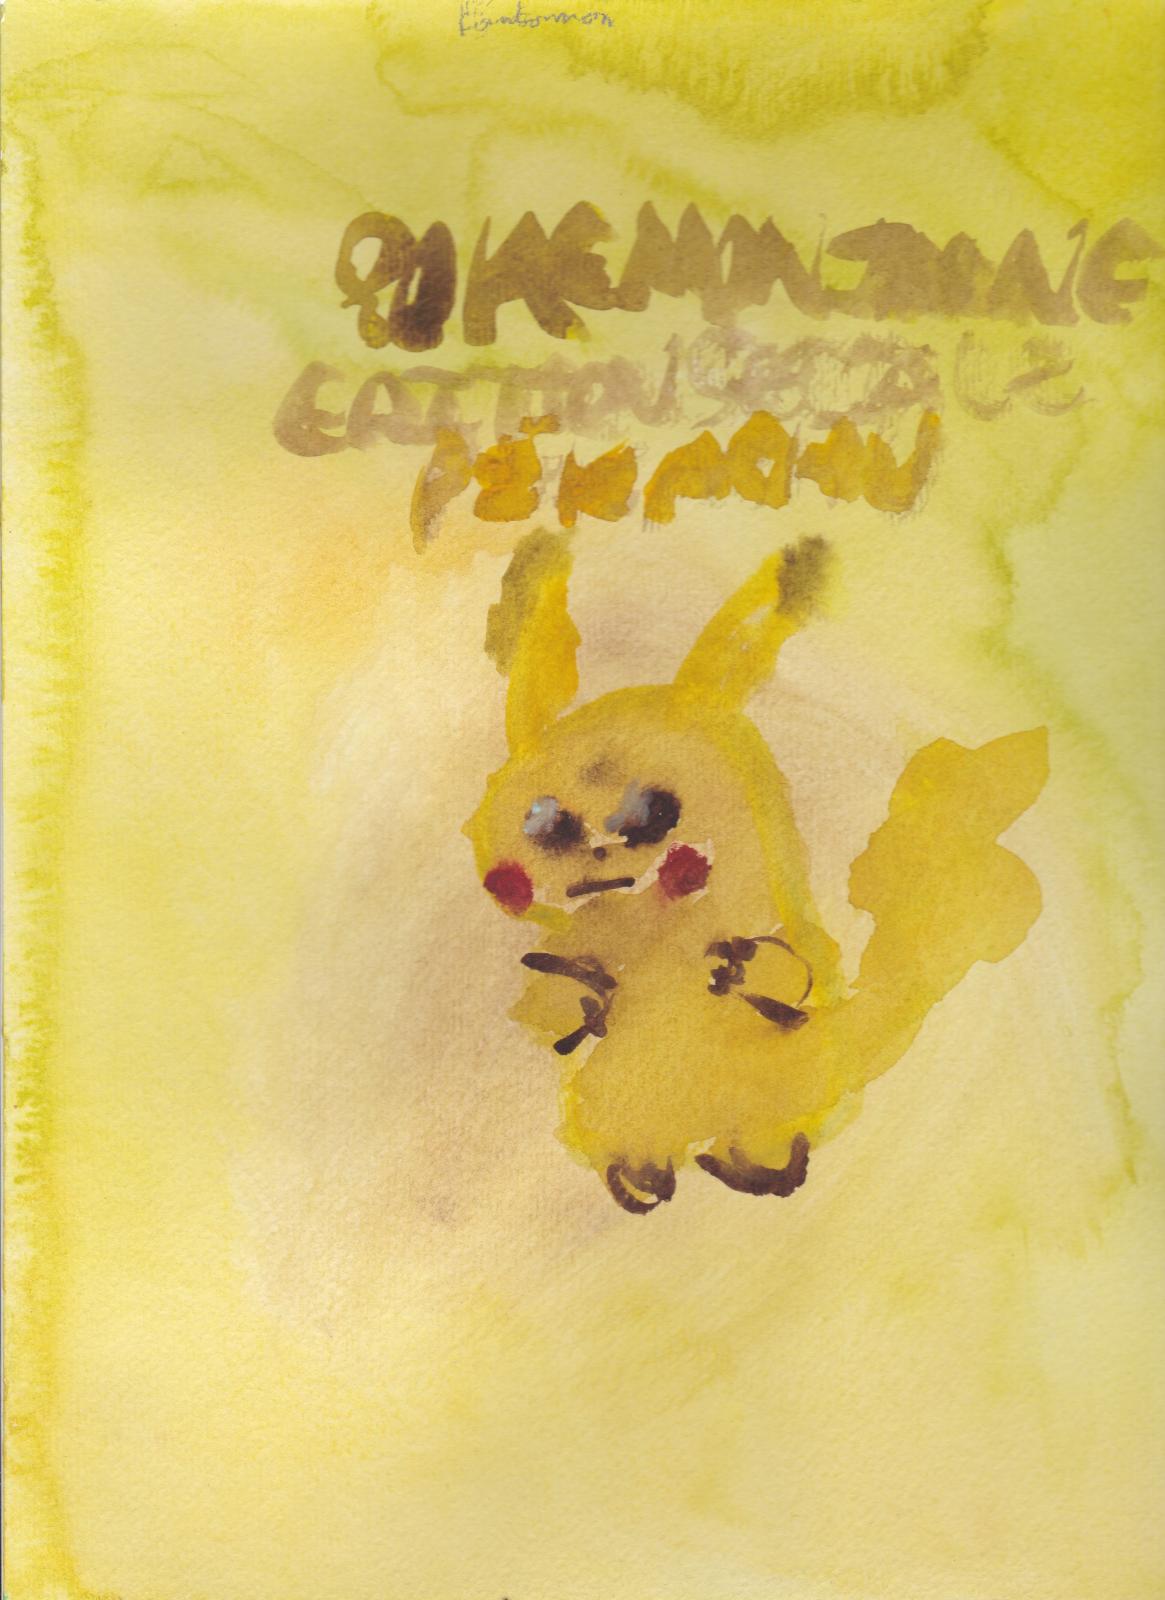 Dégradé de jaune: Pokémon version Jaune édition spéciale Pikachu (Moi) Magnifique Pikachu Rafa. (Kanto)